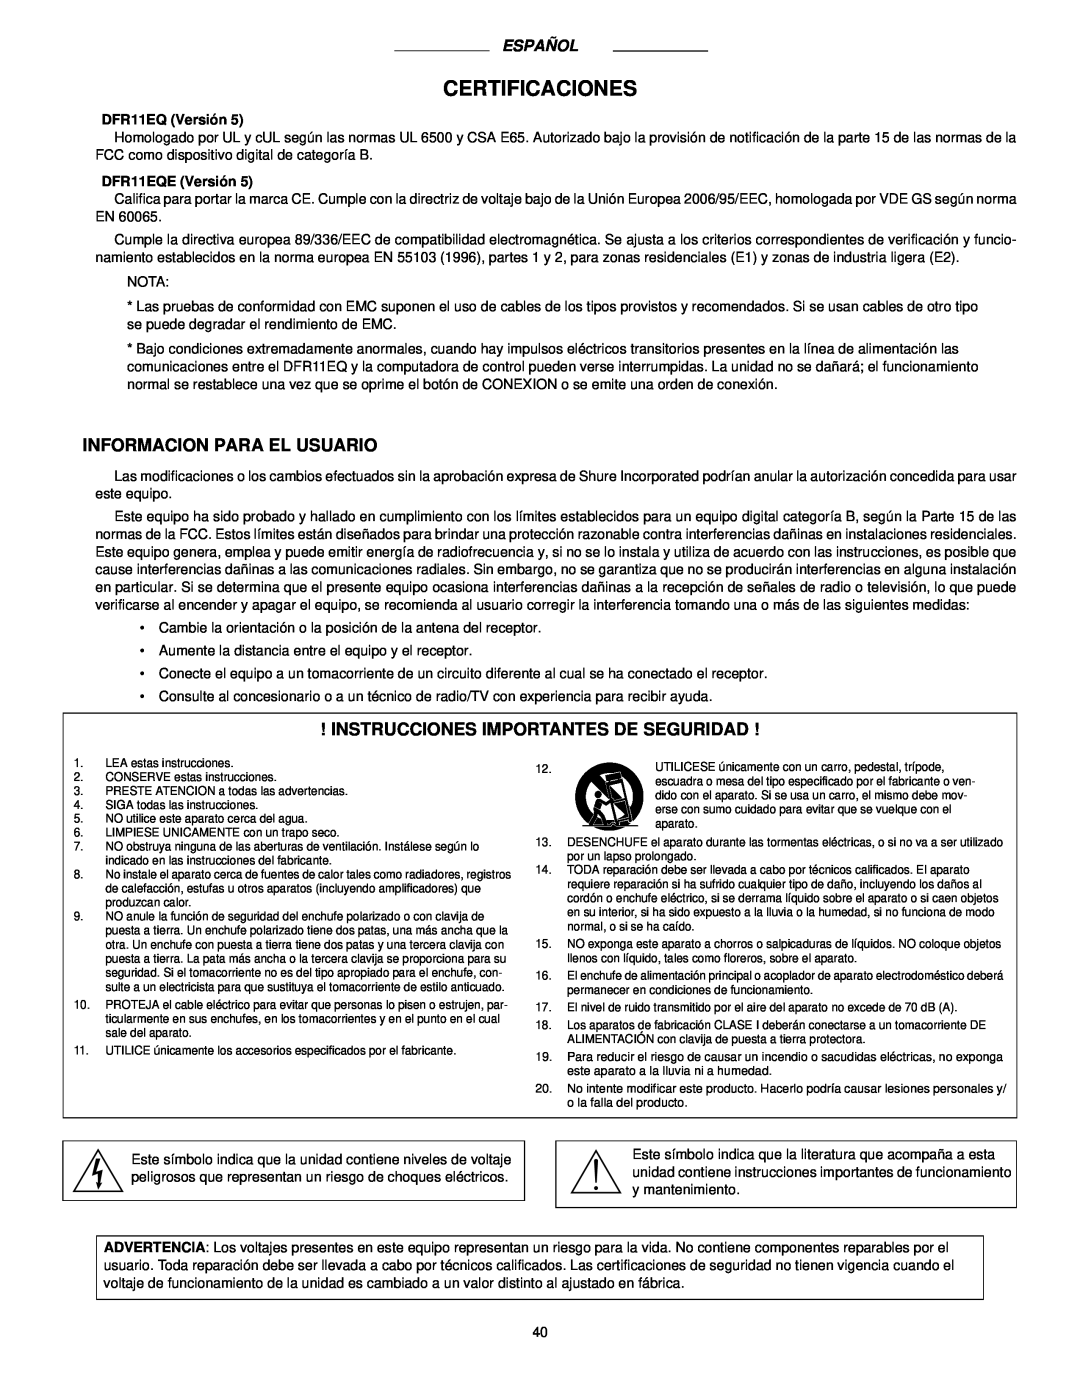 Shure DFR11EQ manual Certificaciones, Informacion Para El Usuario, Instrucciones Importantes De Seguridad 